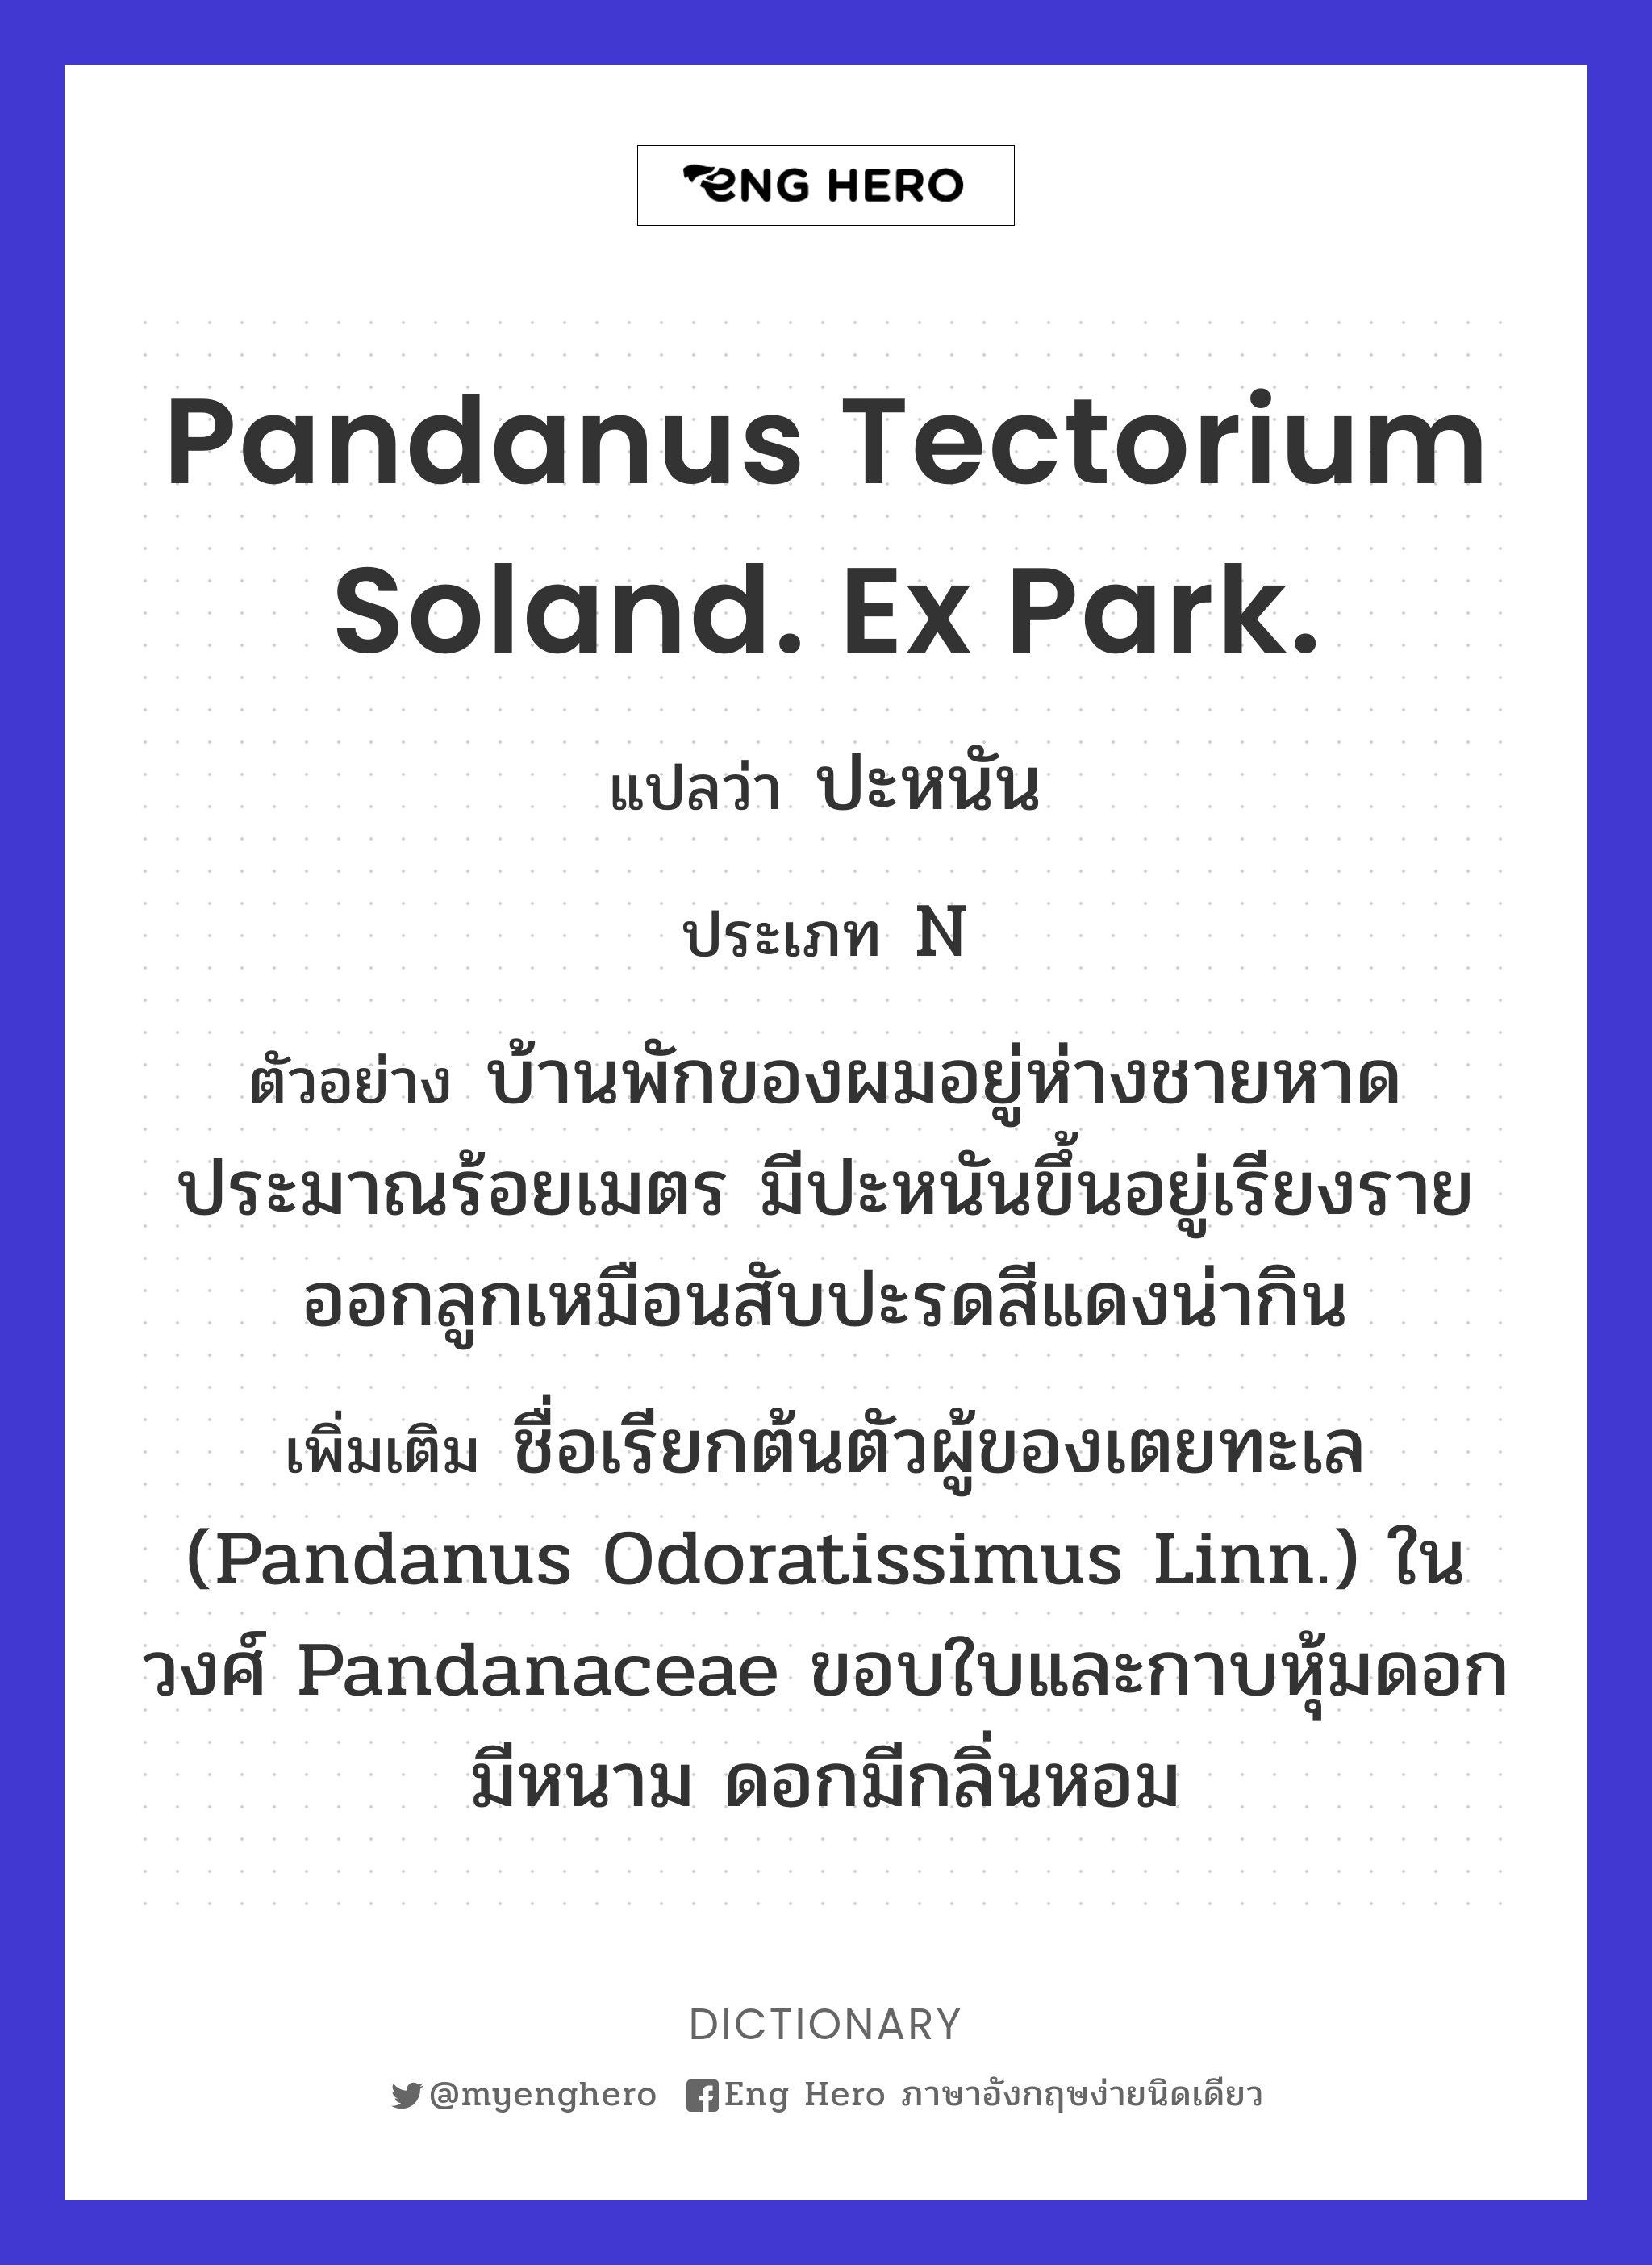 Pandanus tectorium Soland. Ex Park.